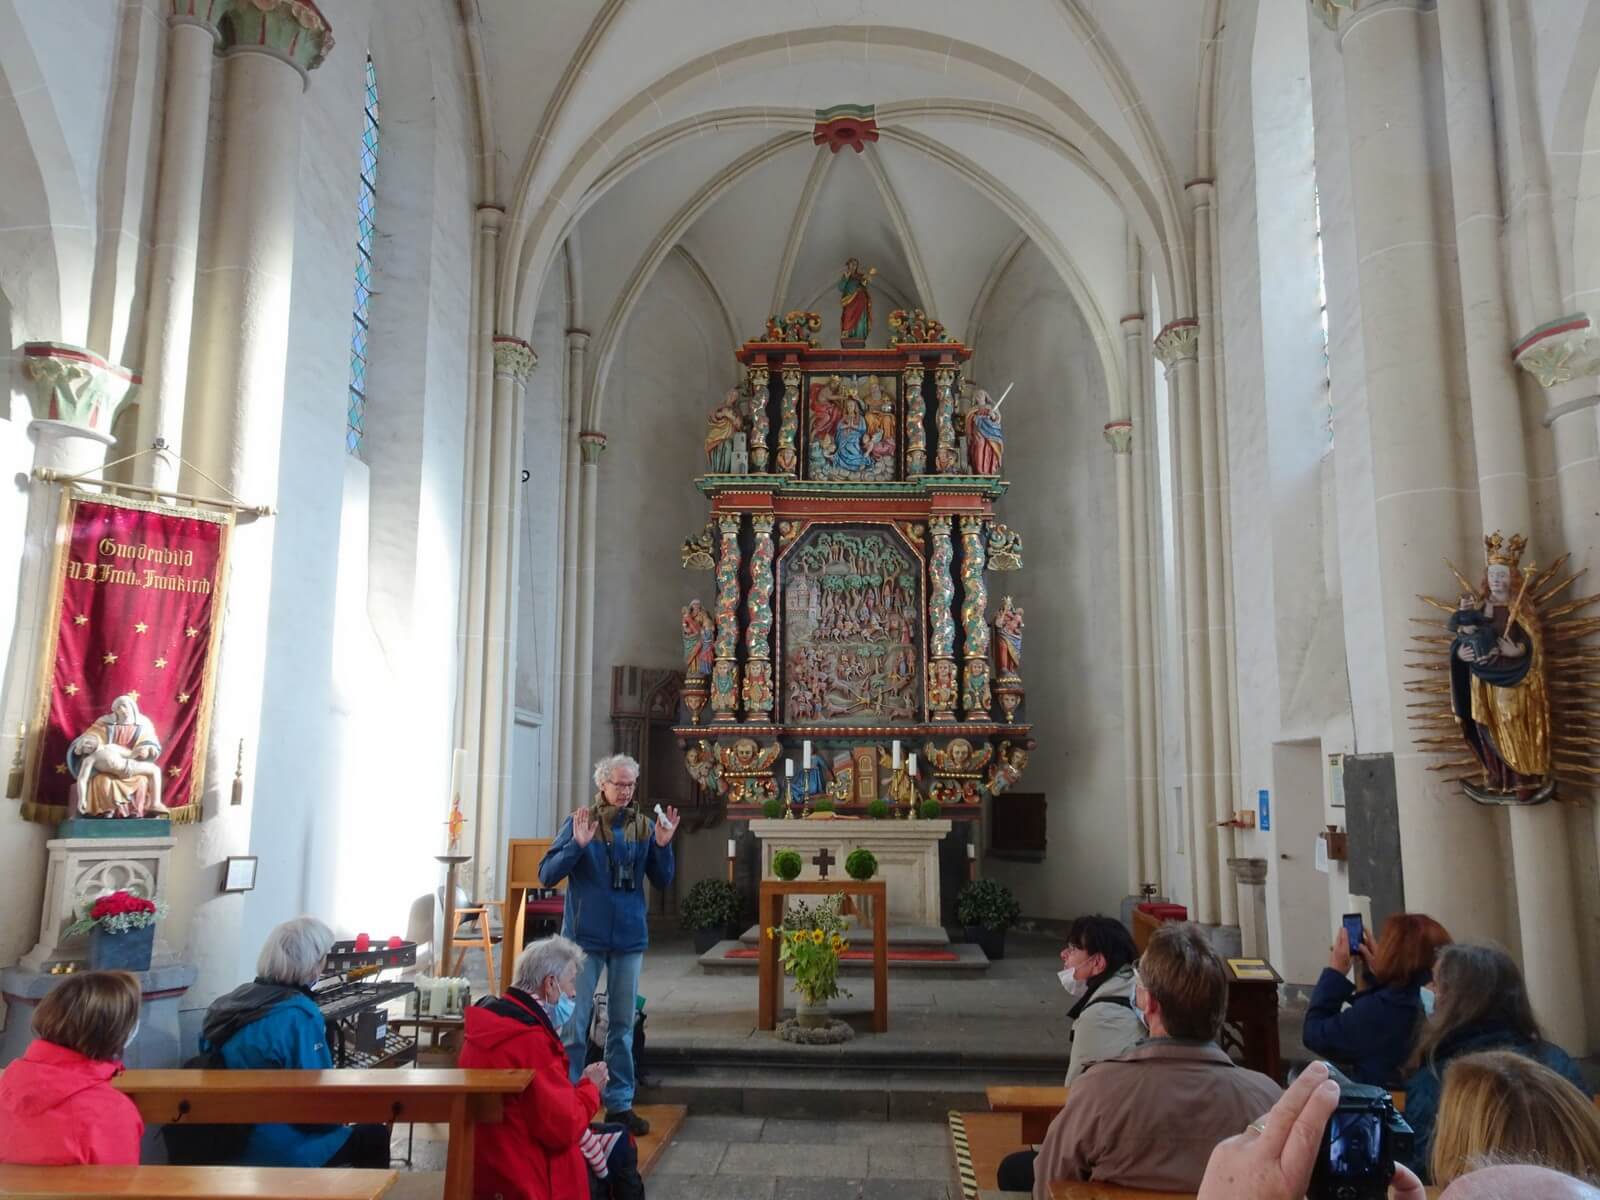 Altarbild der Fraukirch mit plastischer Darstellung der Genoveva-Sage - Lupe Reisen